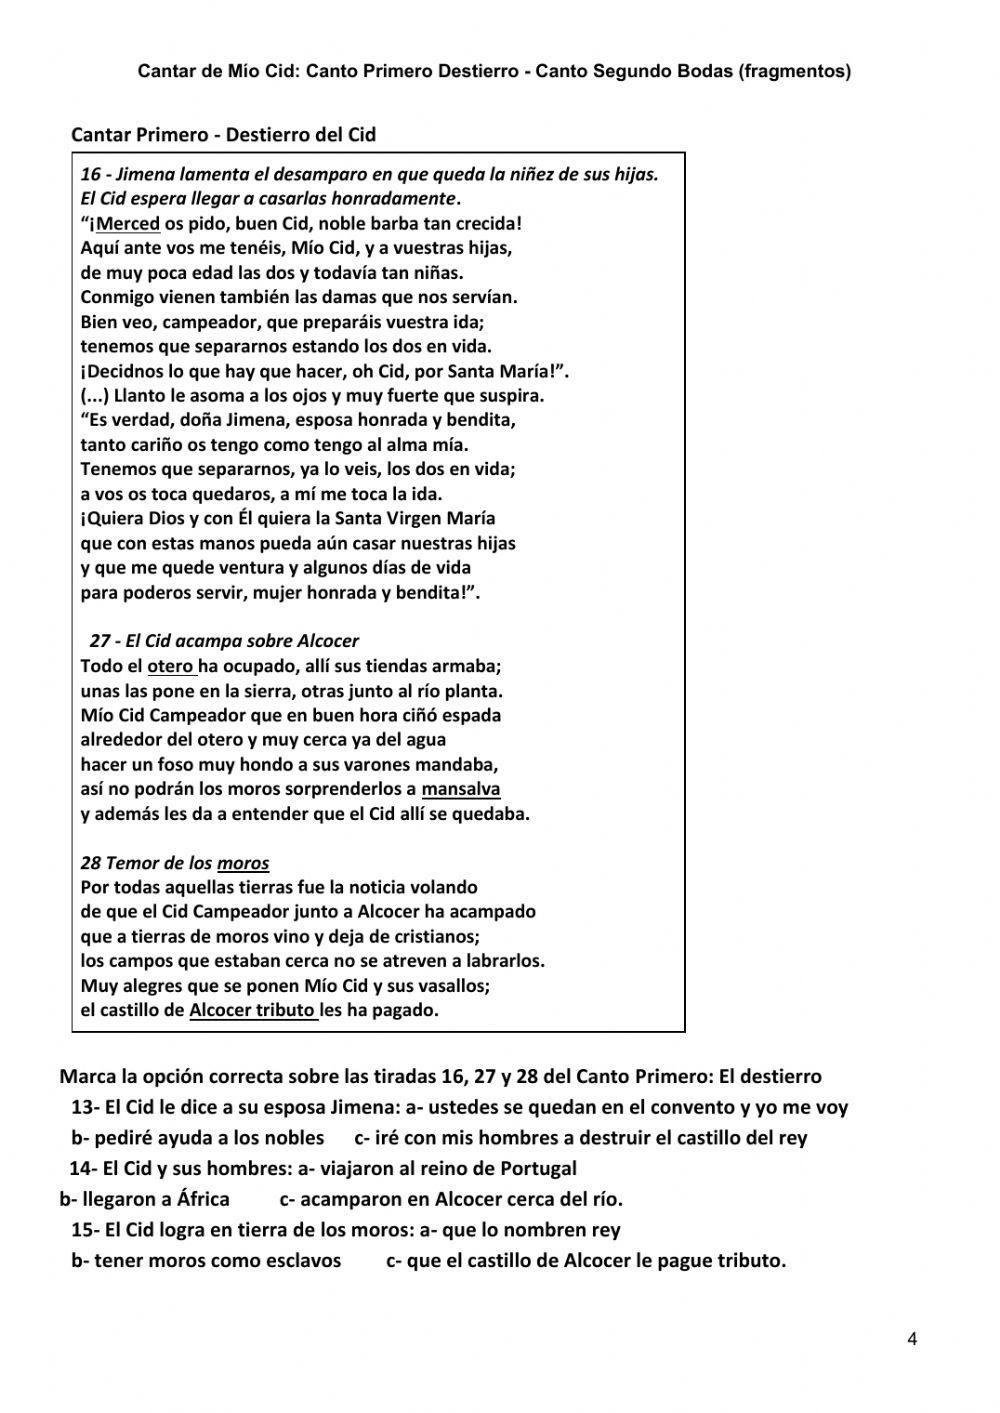 Cantar de Mío Cid - Canto Primero y Segundo (frag)